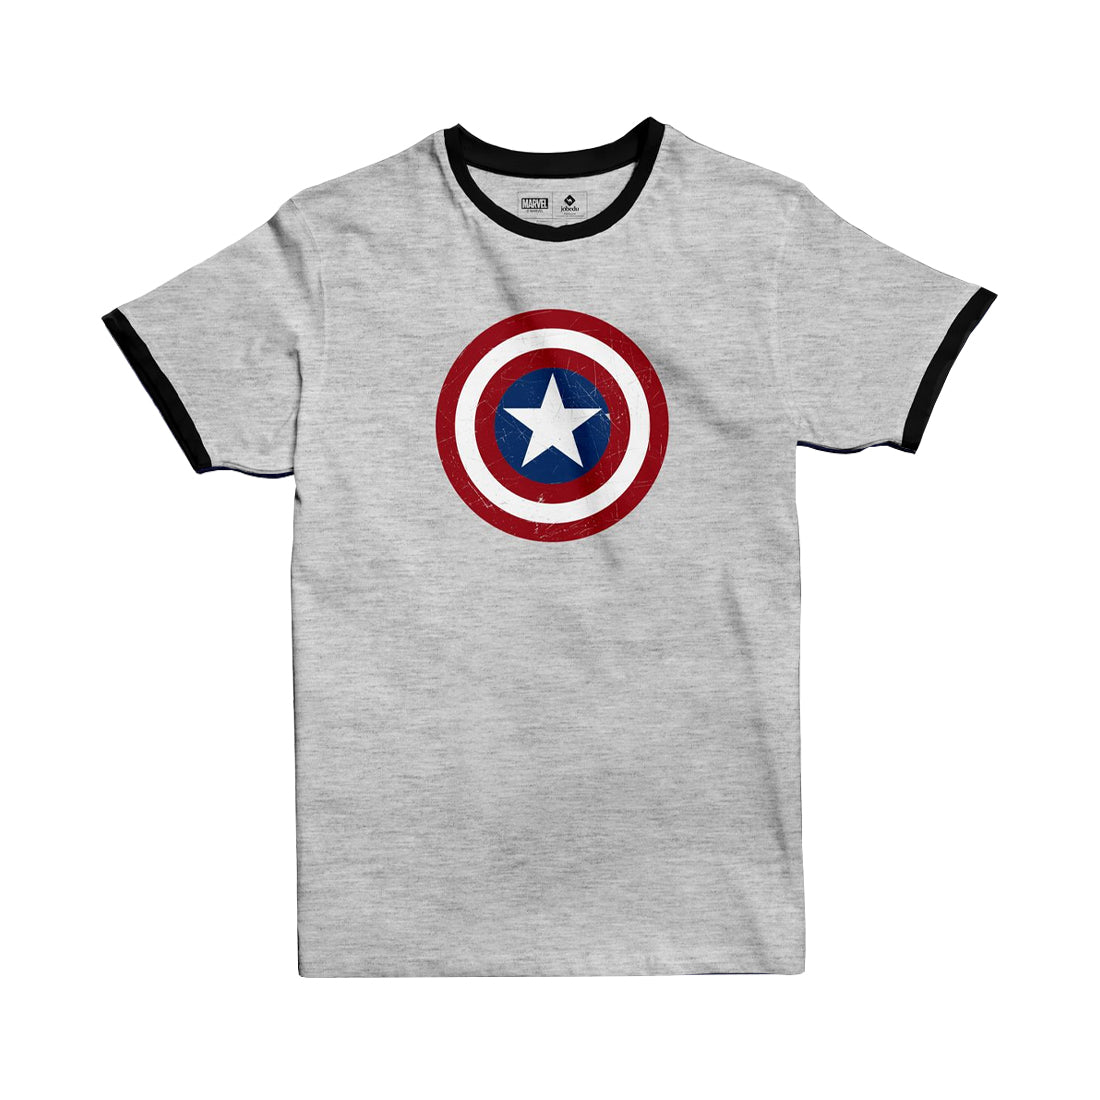 Jobedu Captain America Shield Ringer T-shirt - M - Light Grey Melange & Black - تي-شيرت - Store 974 | ستور ٩٧٤